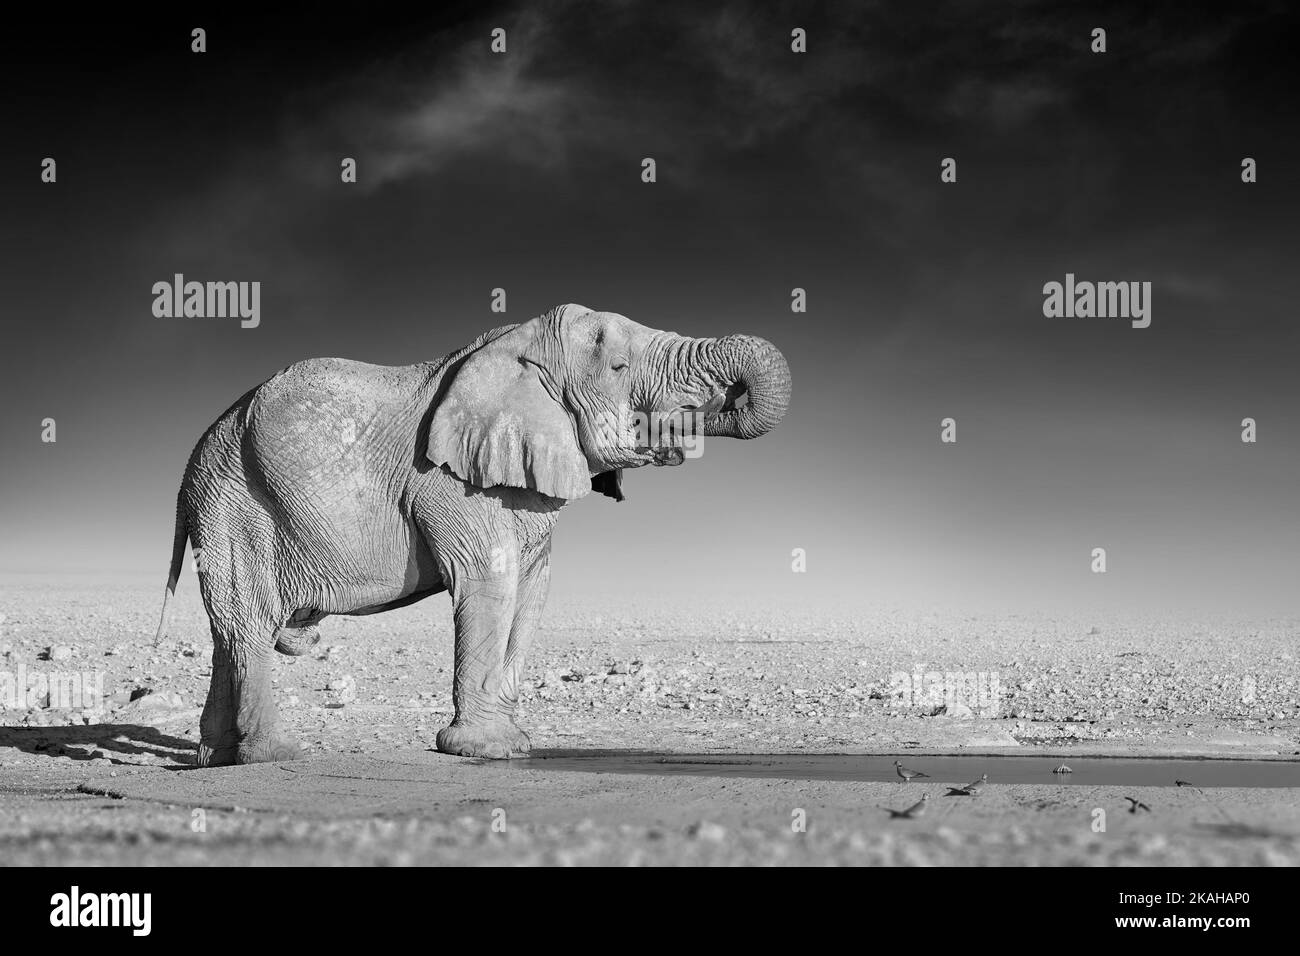 Belle arti, foto in bianco e nero di un elefante africano su sfondo scuro, in piedi sulla riva dello sgabello, tronco rischiato, acqua potabile. Na Foto Stock